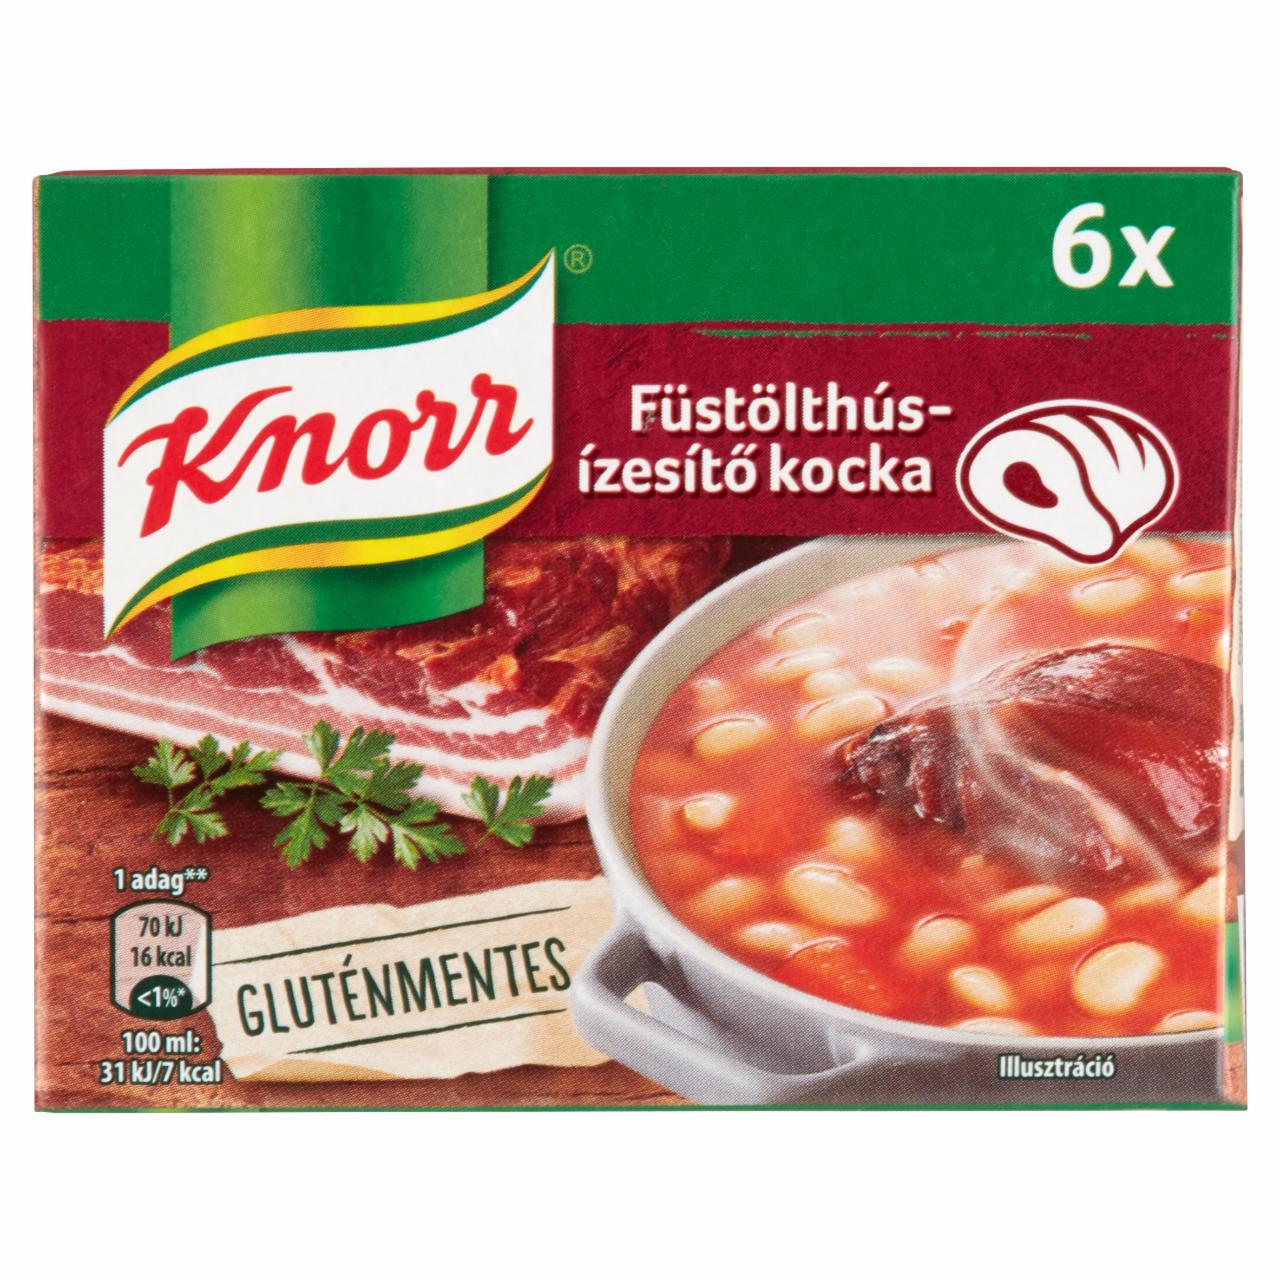 Képek - Knorr füstölthús-ízesítő kocka 6 x 10 g (60 g)